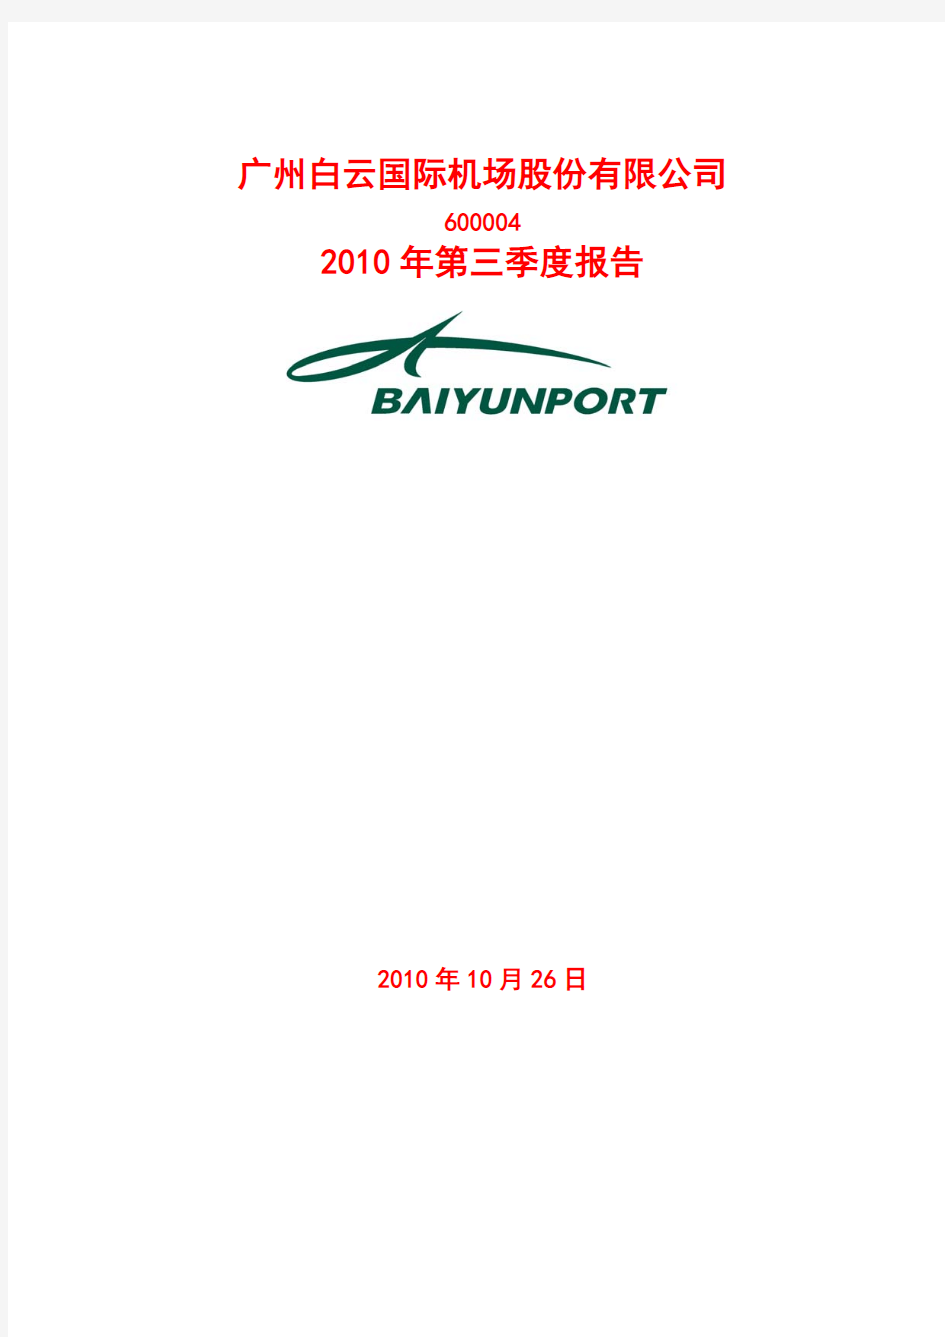 广州白云机场股份有限公司2010年第三季度财务报告